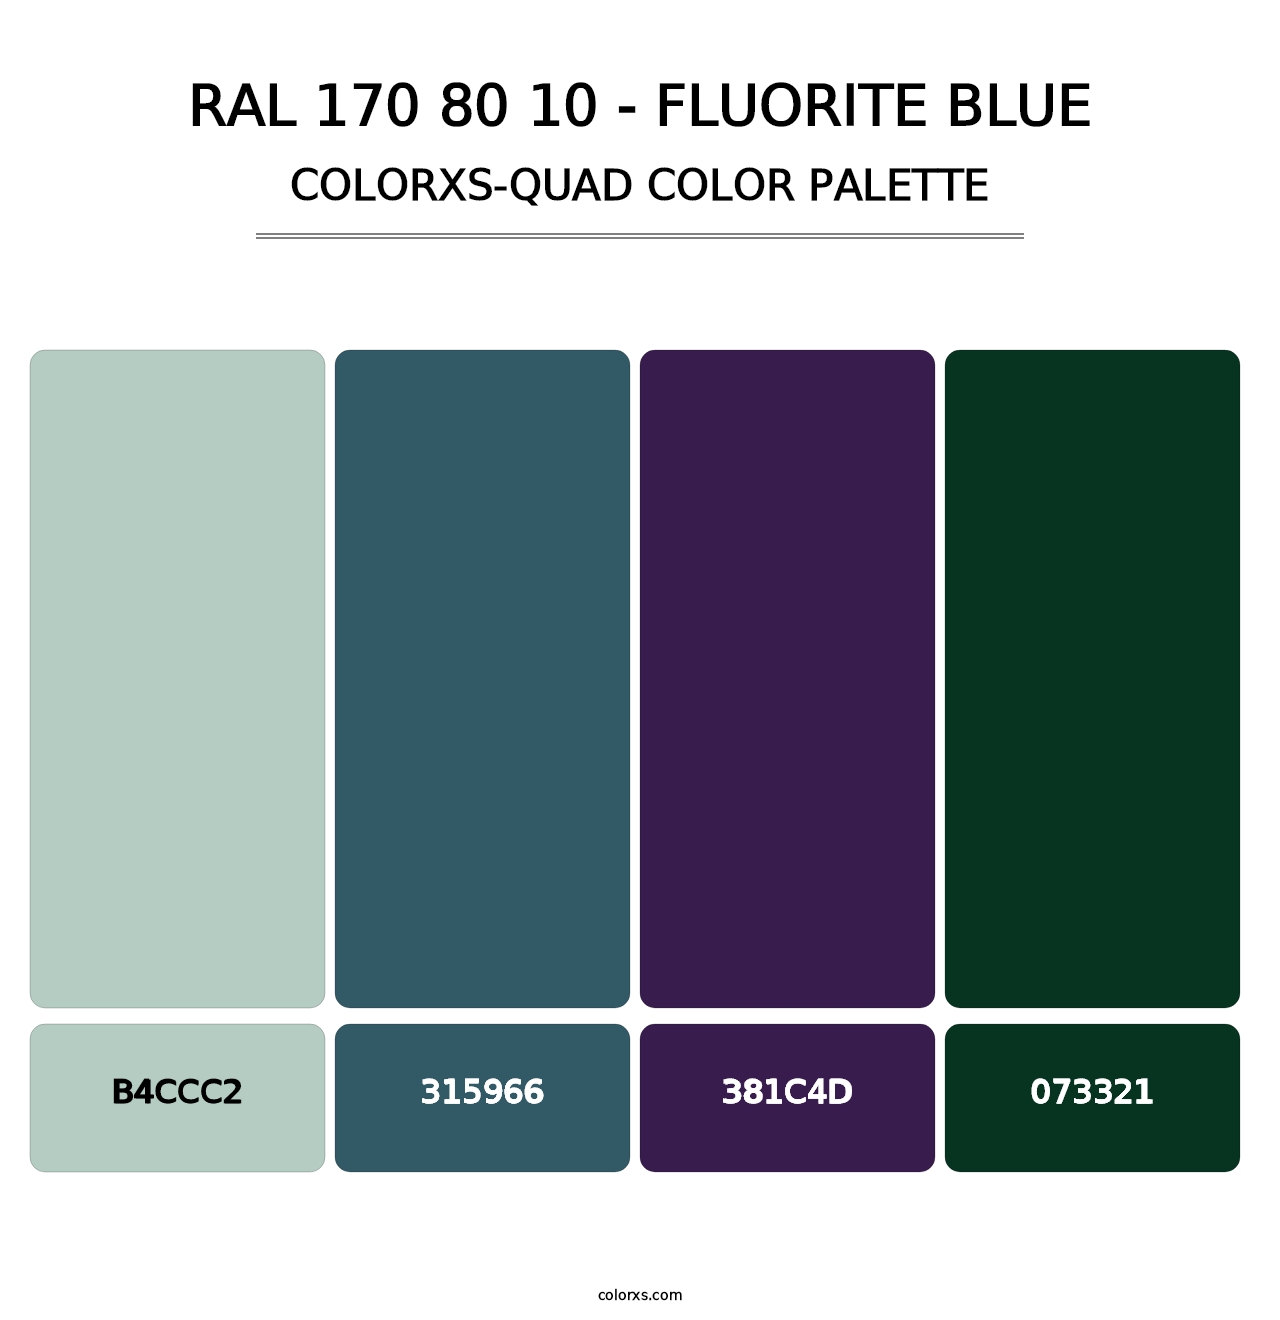 RAL 170 80 10 - Fluorite Blue - Colorxs Quad Palette